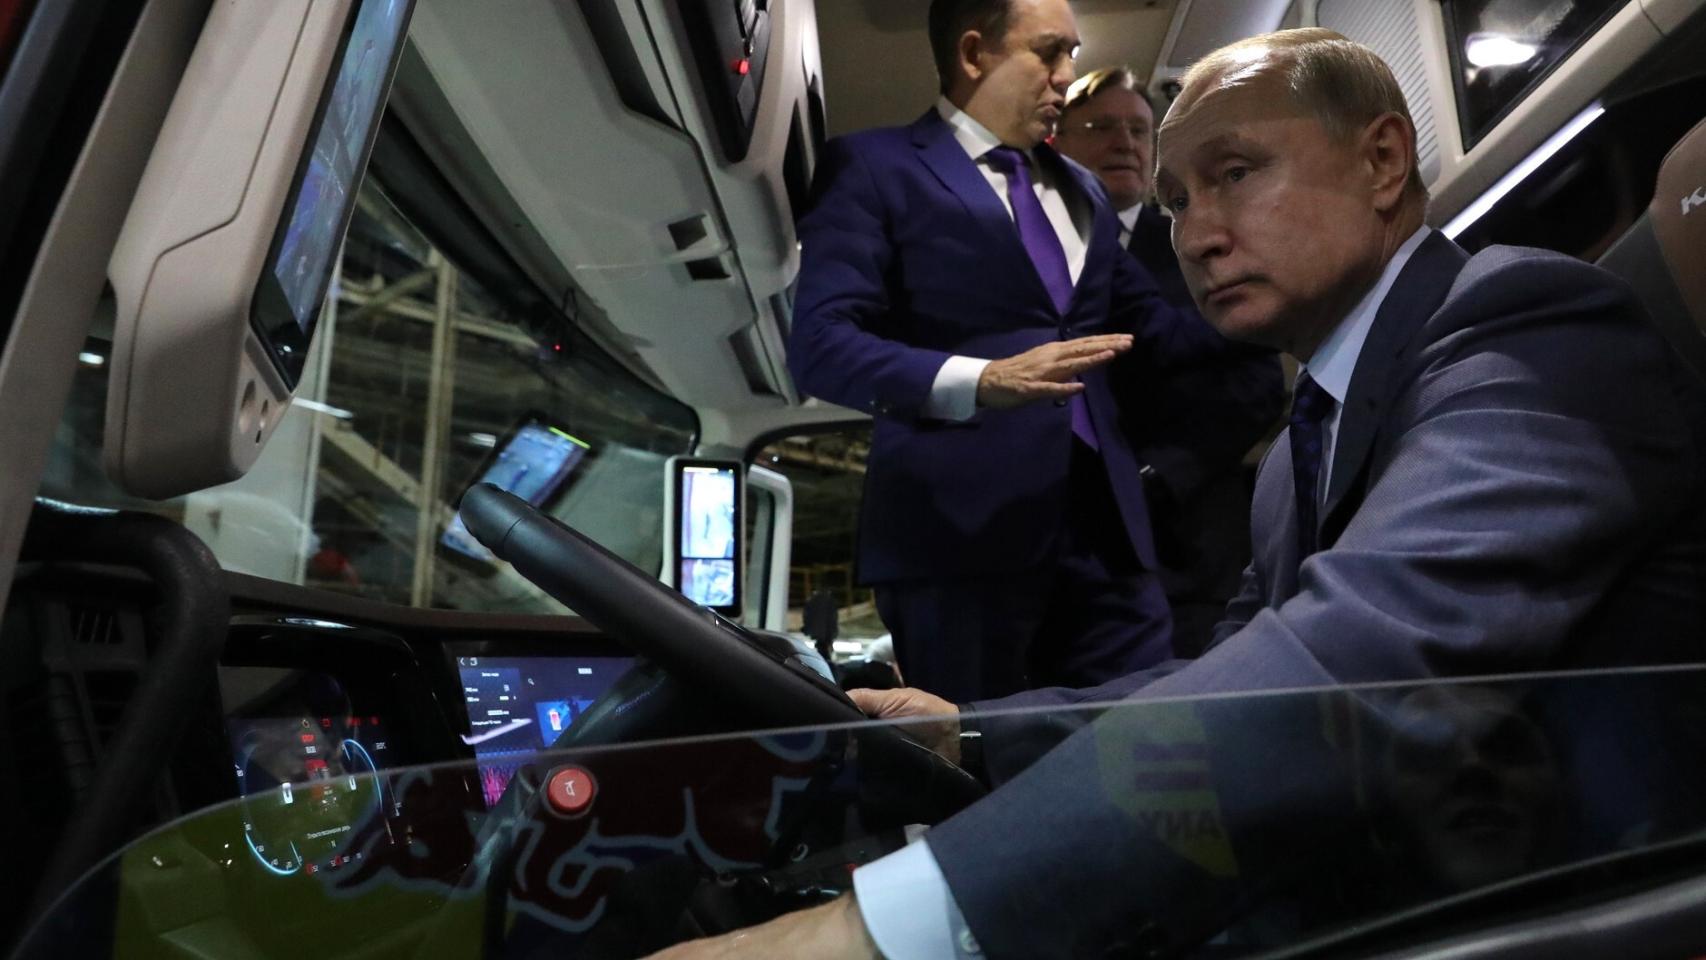 Cuál es el coche de Vladímir Putin? Analizamos el Aurus Senat, su